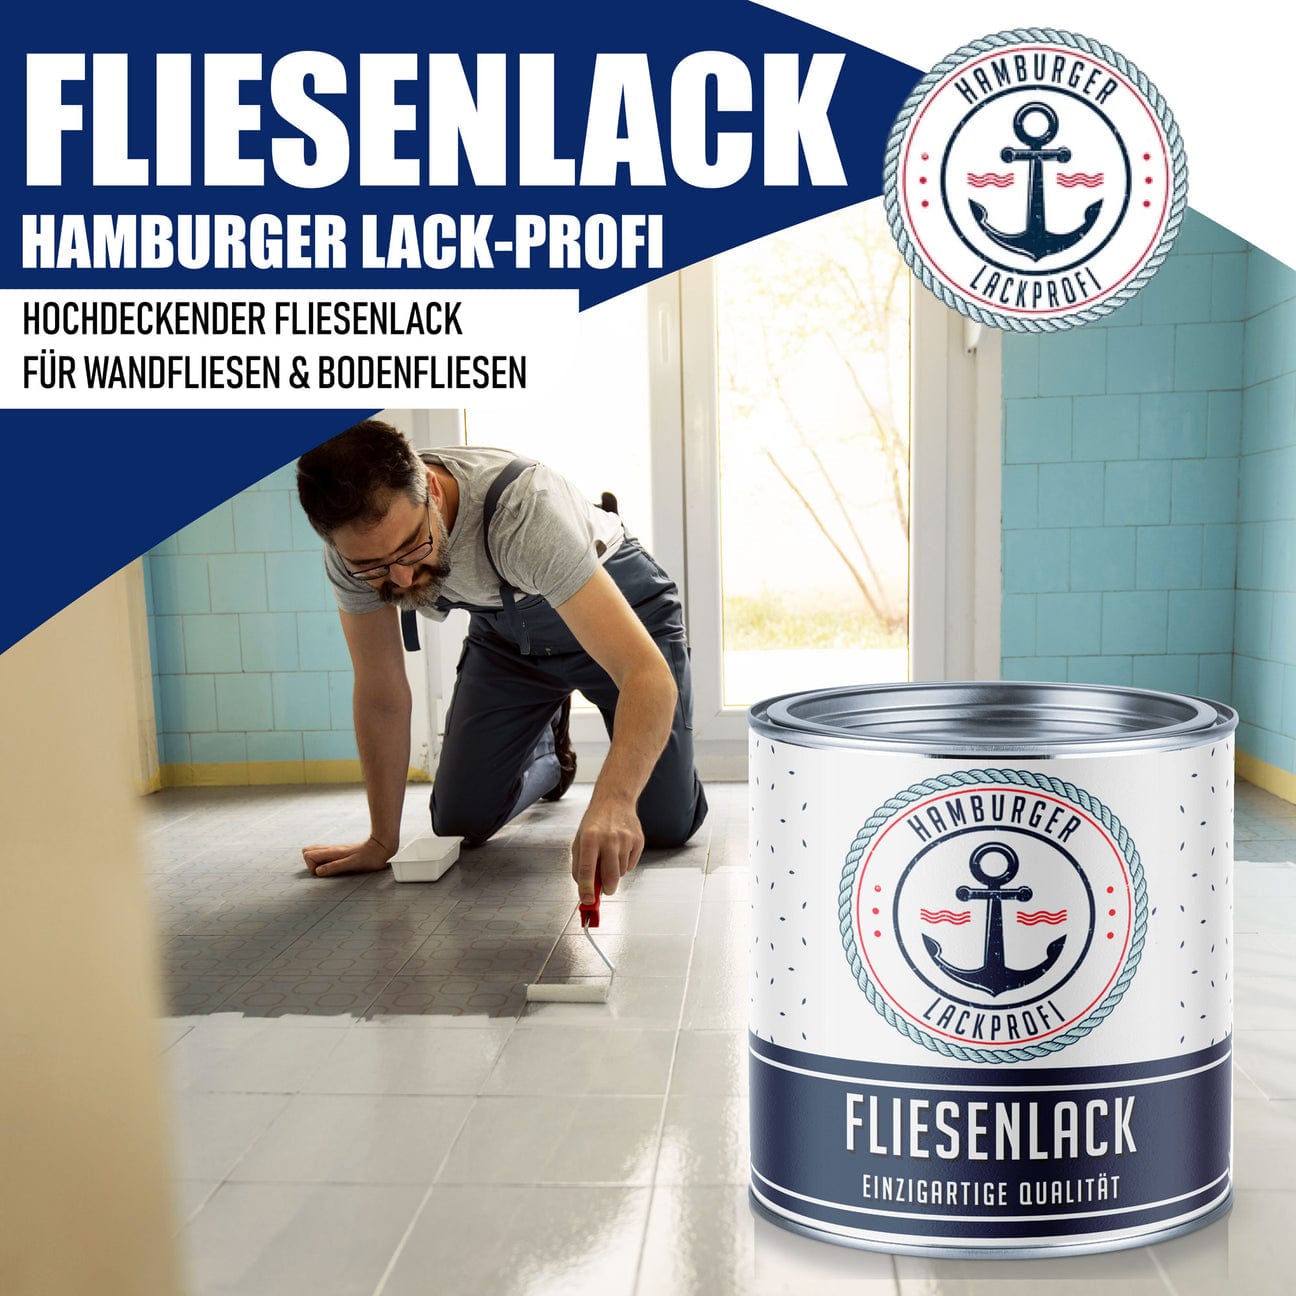 Hamburger Lack-Profi Hamburger Lack-Profi Fliesenlack Weißaluminium RAL 9006 - hochdeckende Fliesenfarbe Schwarz